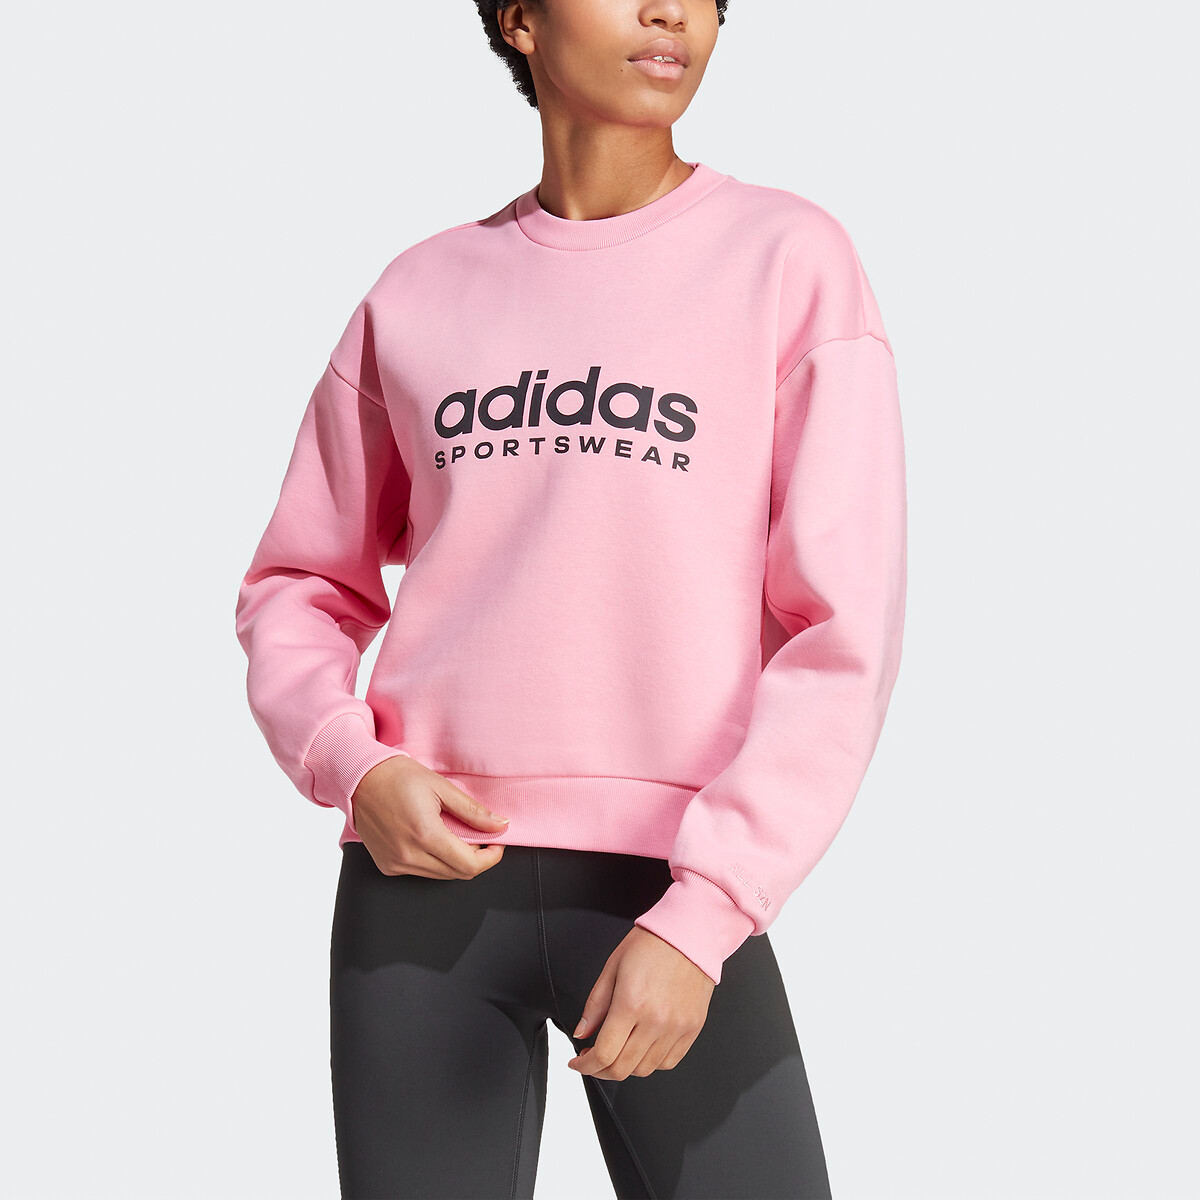 terrorisme hebben zich vergist verkenner Sweater all season fleece graphic roze Adidas Sportswear | La Redoute